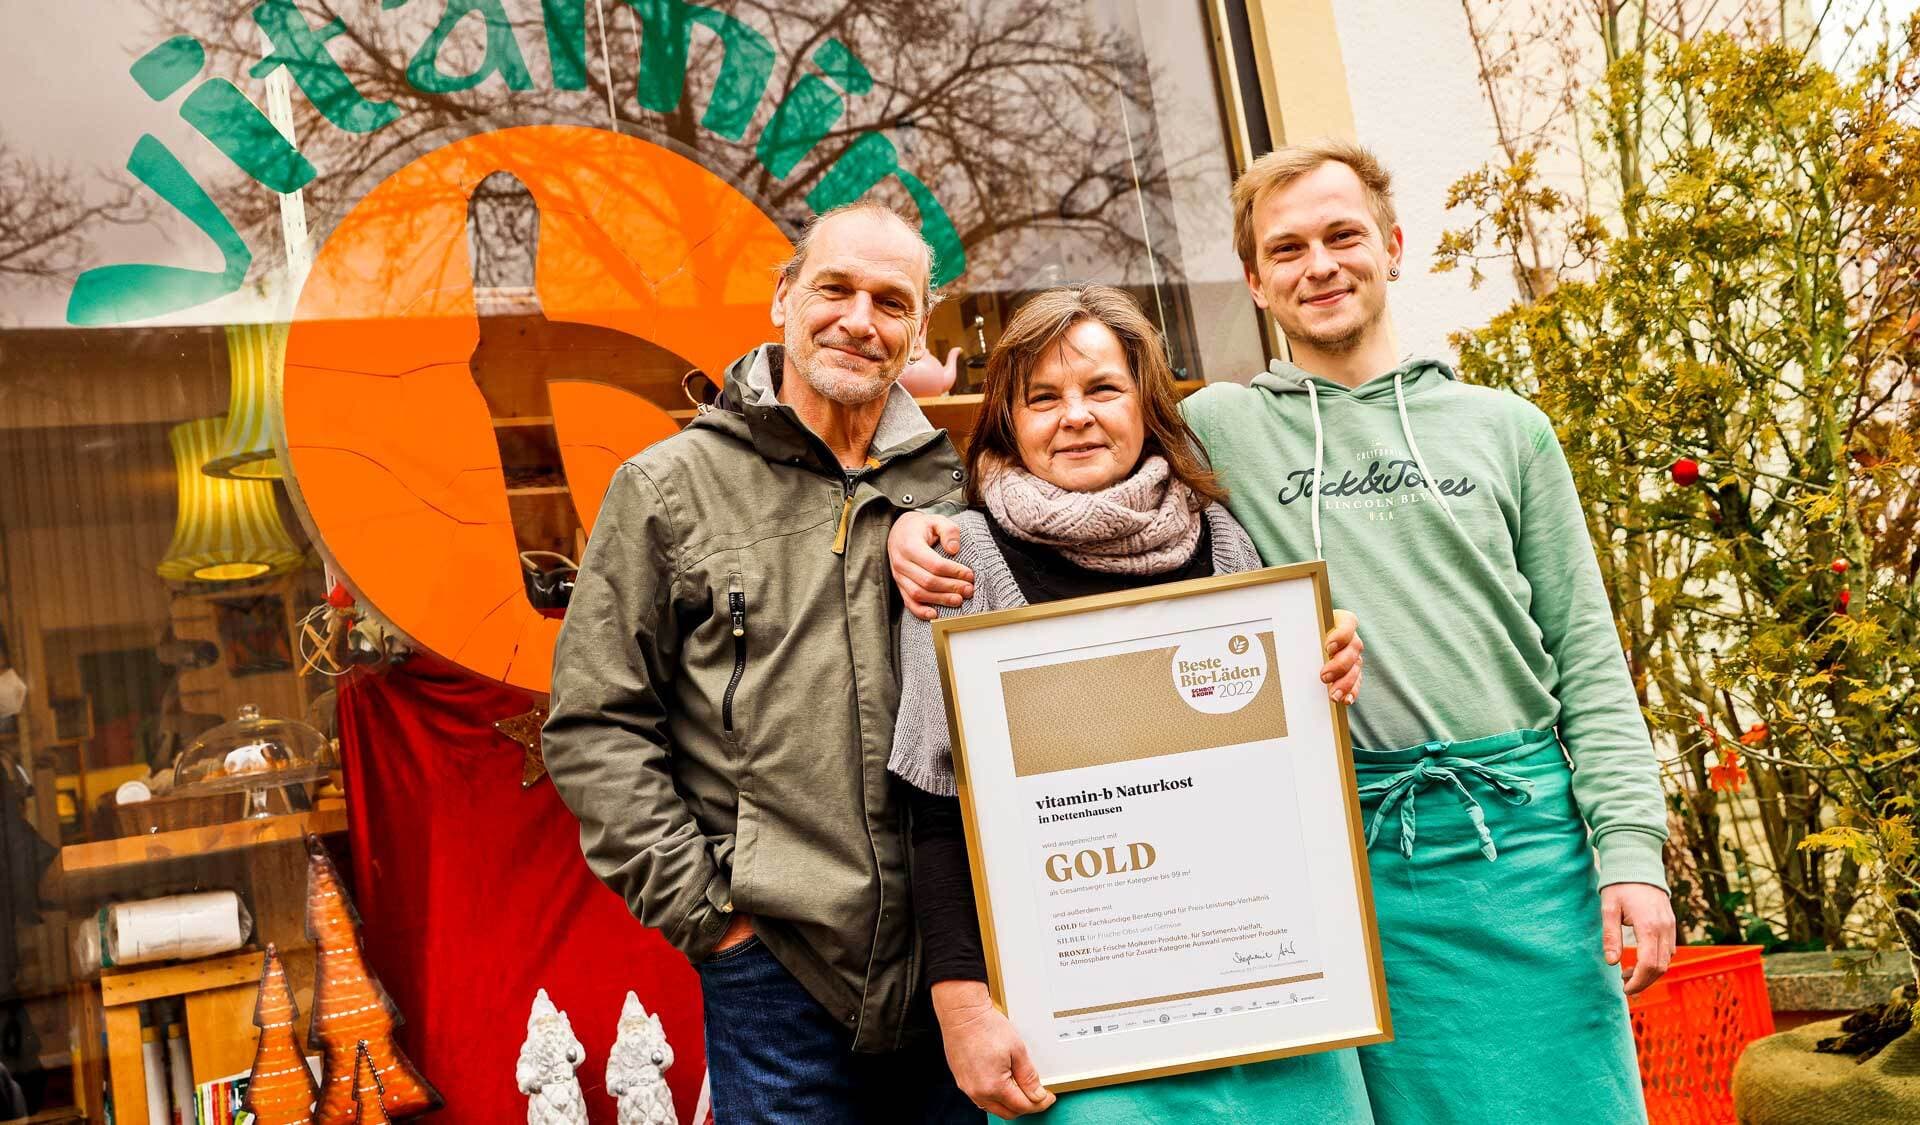 Ursula Wagner mit Ehemann Ulf, Sohn Jannik halten vor dem Vitamin b die Gold-Auszeichnung als „Bester Bio-Laden 2022“ in der Hand.